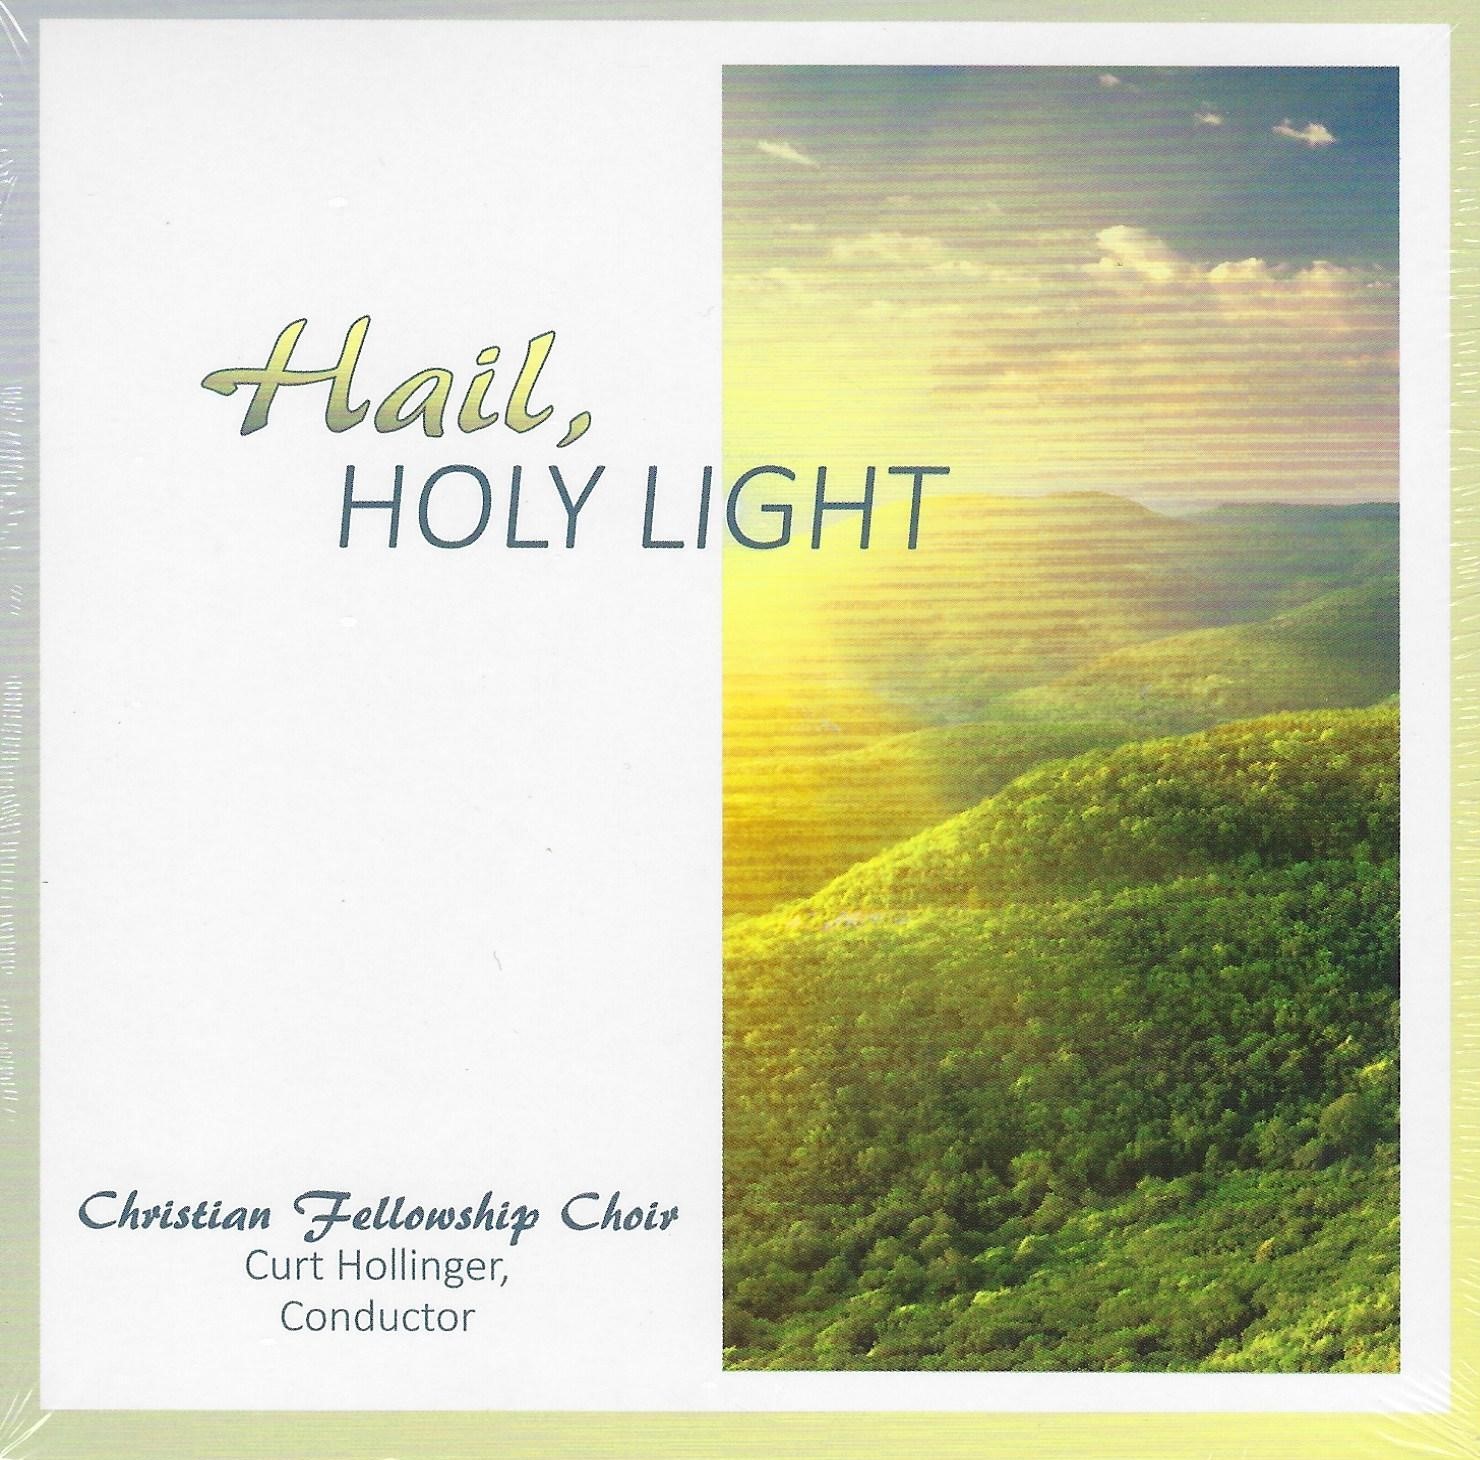 HAIL, HOLY LIGHT Christian Fellowship Choir